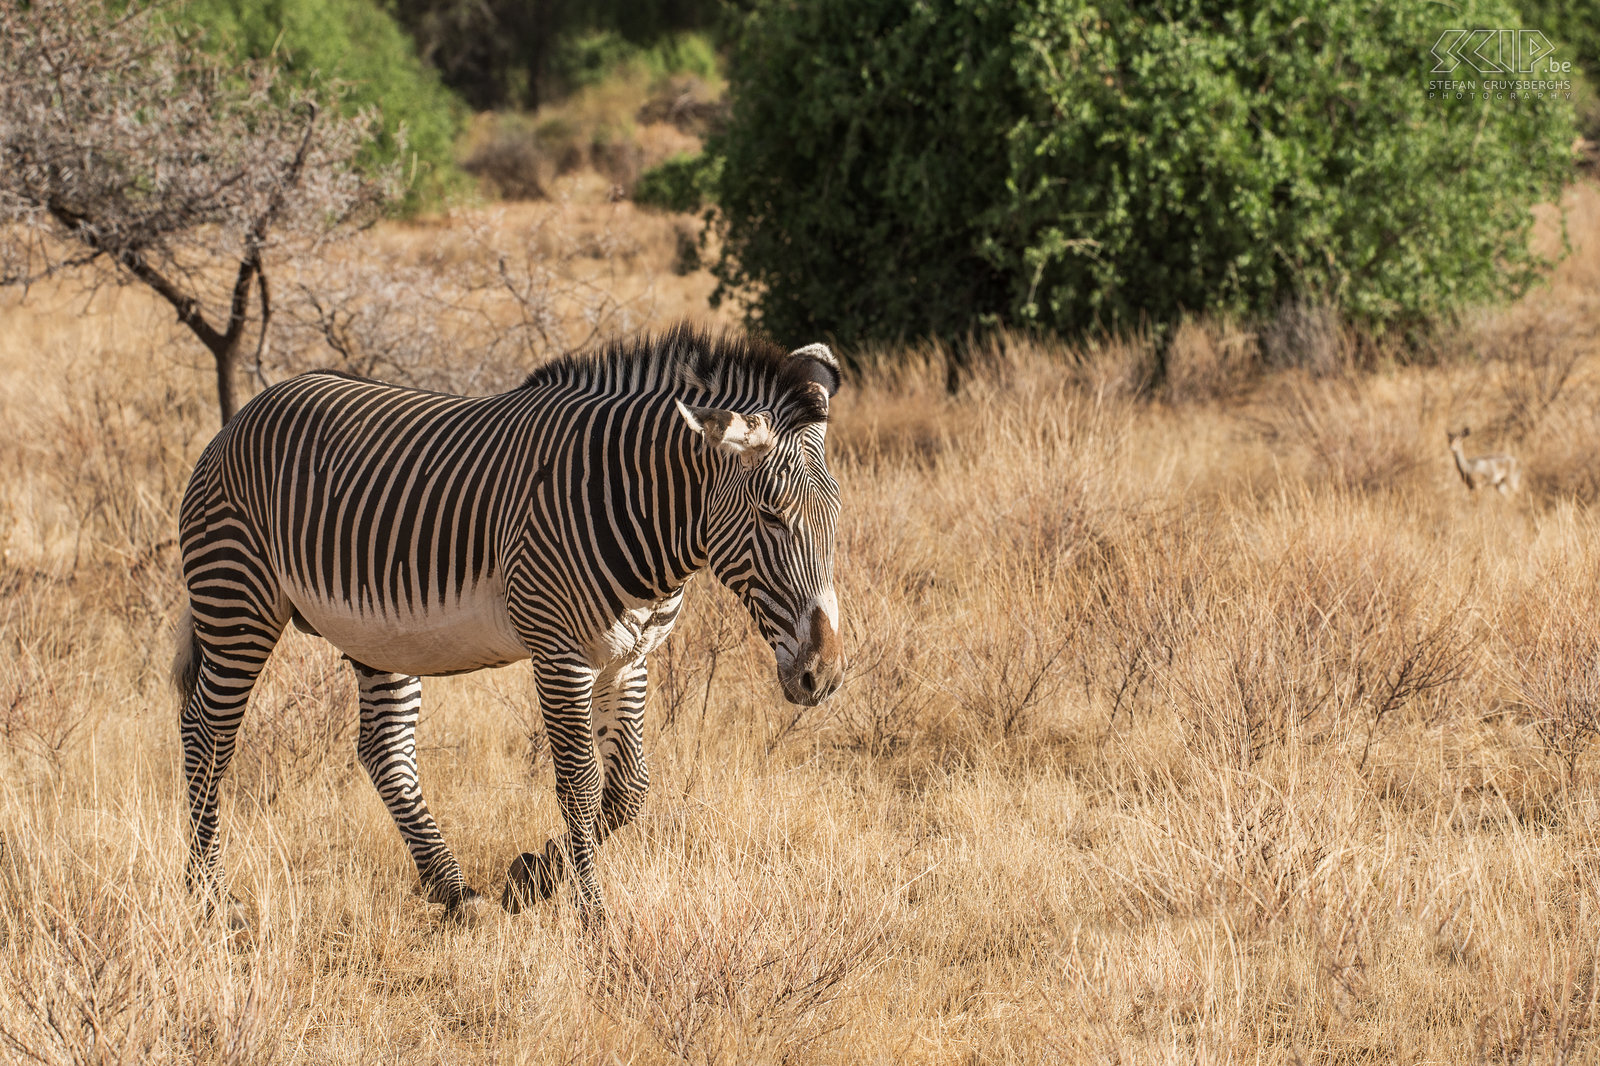 Samburu - Grévyzebra De grévyzebra (Equus grevyi) is de grootste en meest bedreigde van de drie soorten zebra’s. Deze soort leeft niet in grote groepen zoals de gewone zebra. Ze hebben een bredere hals, de strepen zijn smaller en ze hebben een witte buik.<br />
 Stefan Cruysberghs